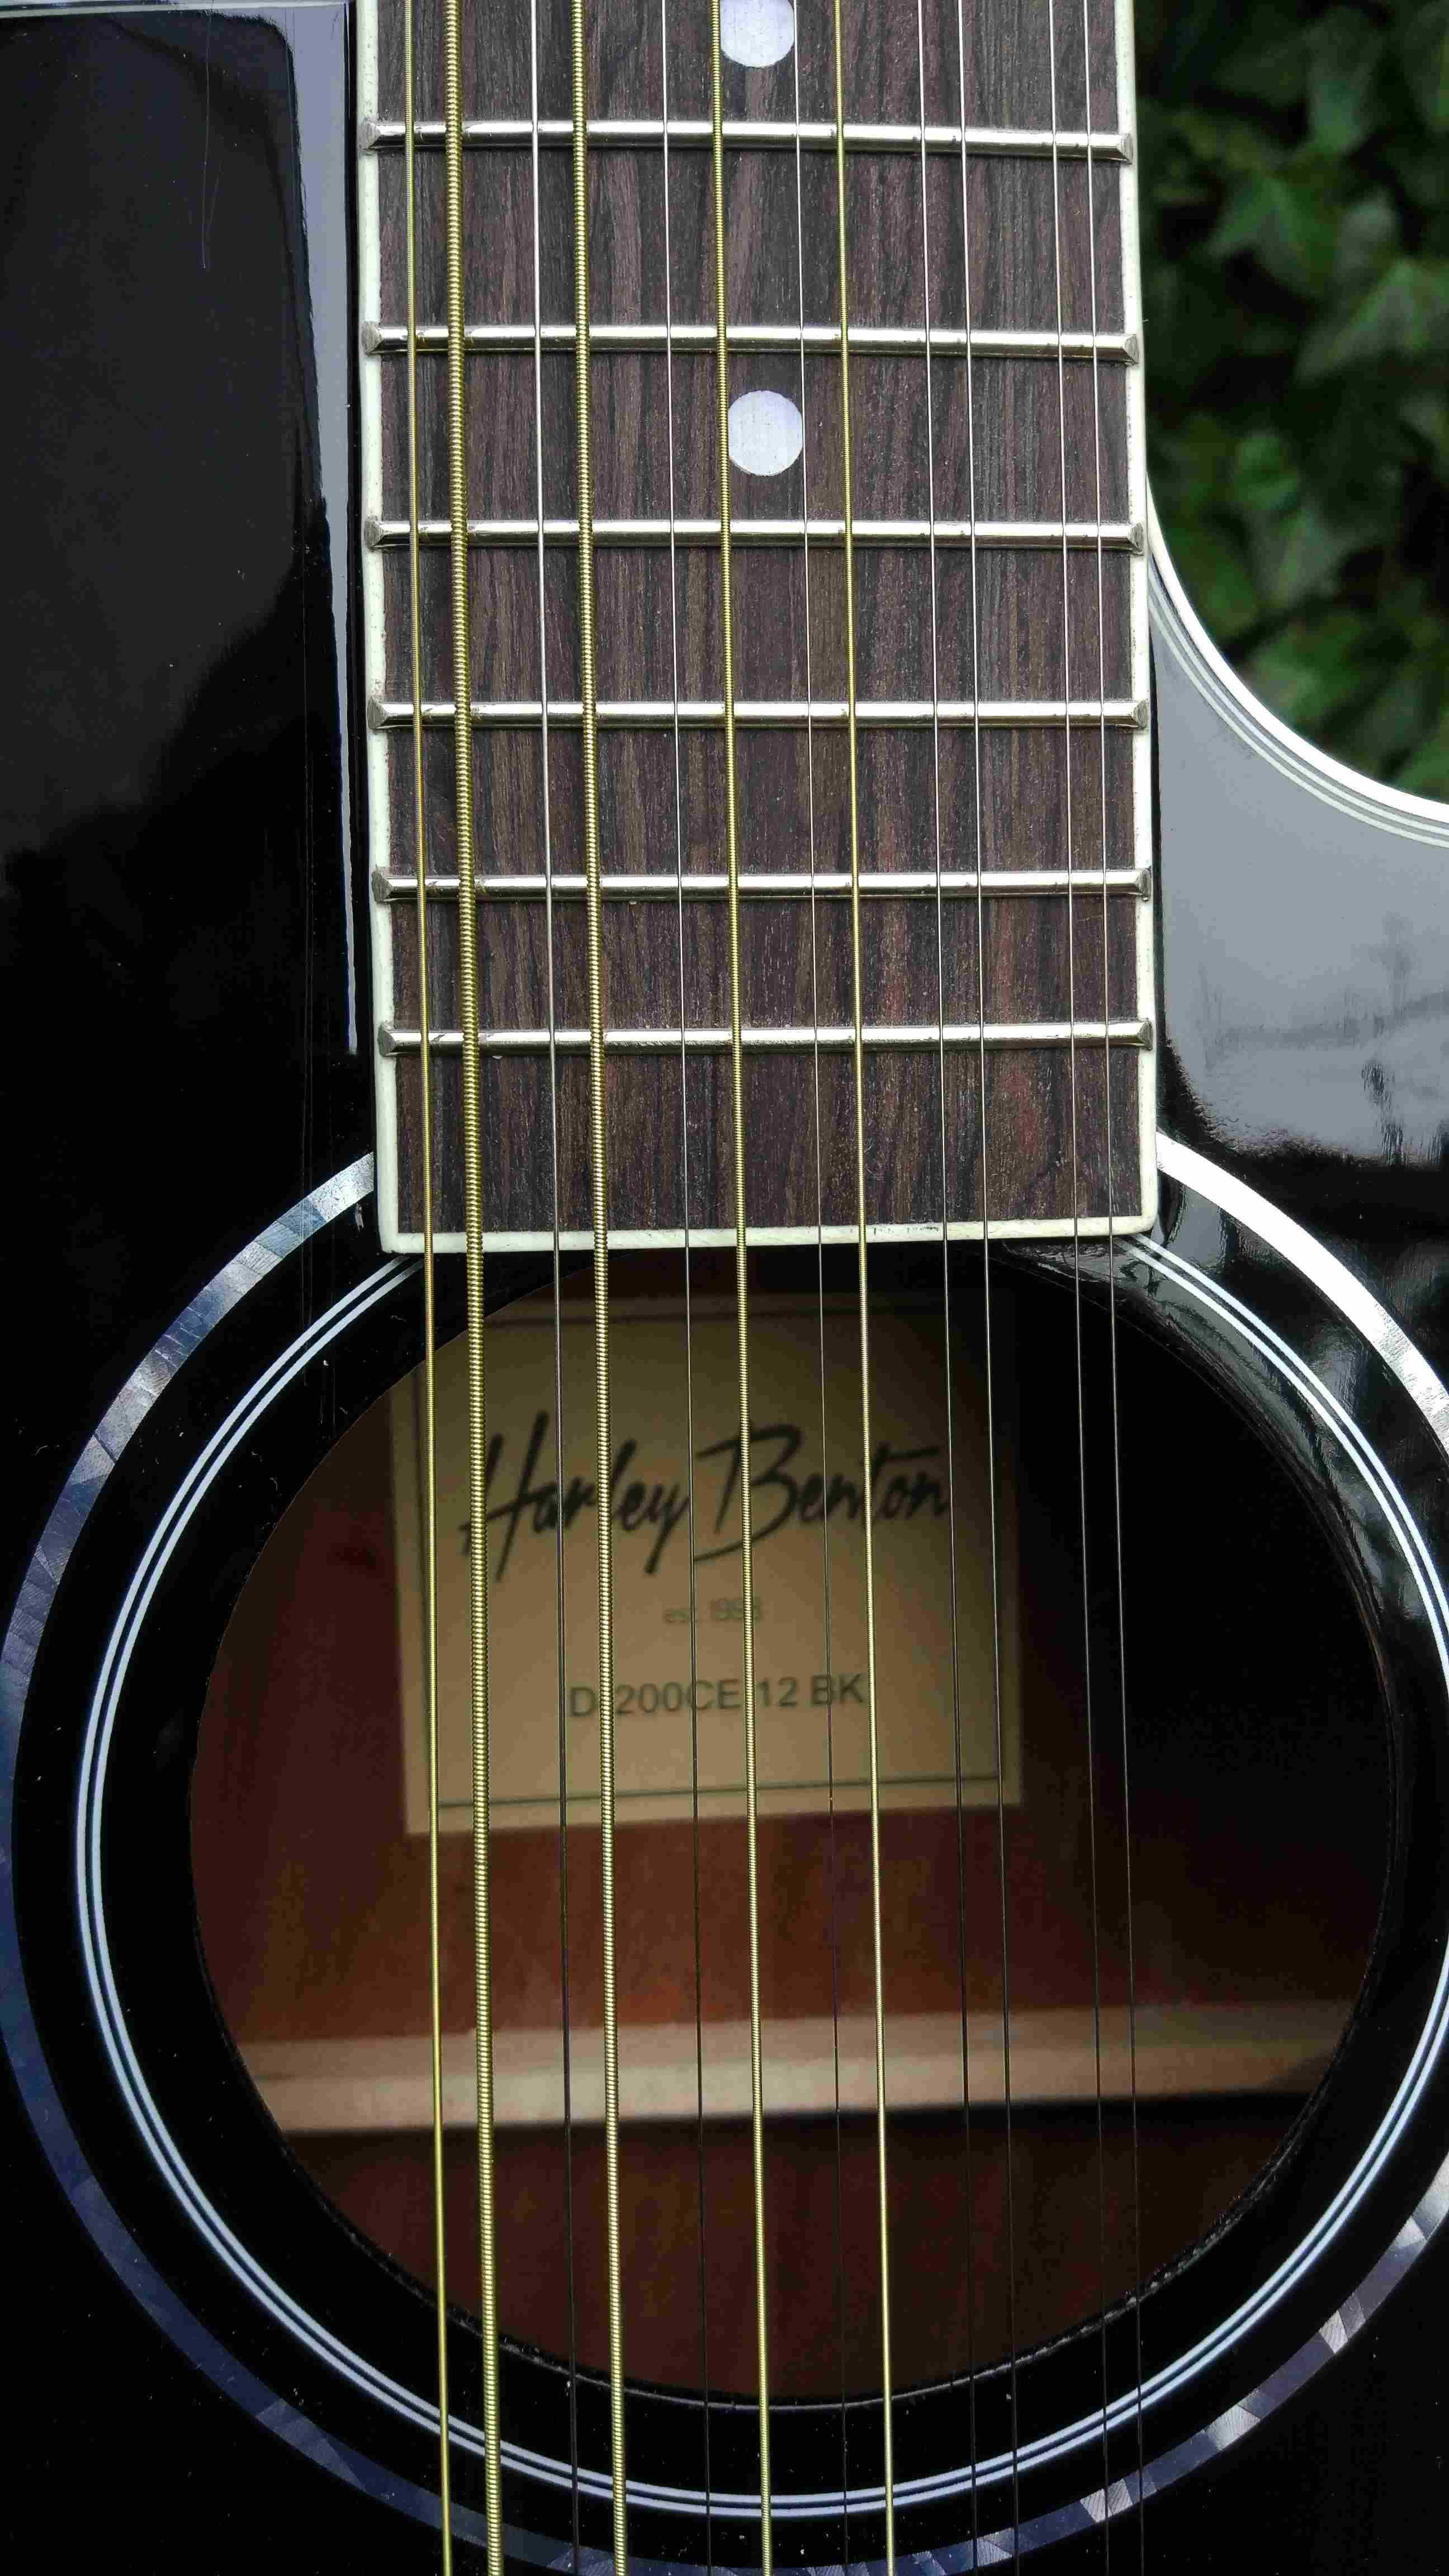 Nowa gitara elektro akustyczna 12 strunowa HB D-200CE-12BK